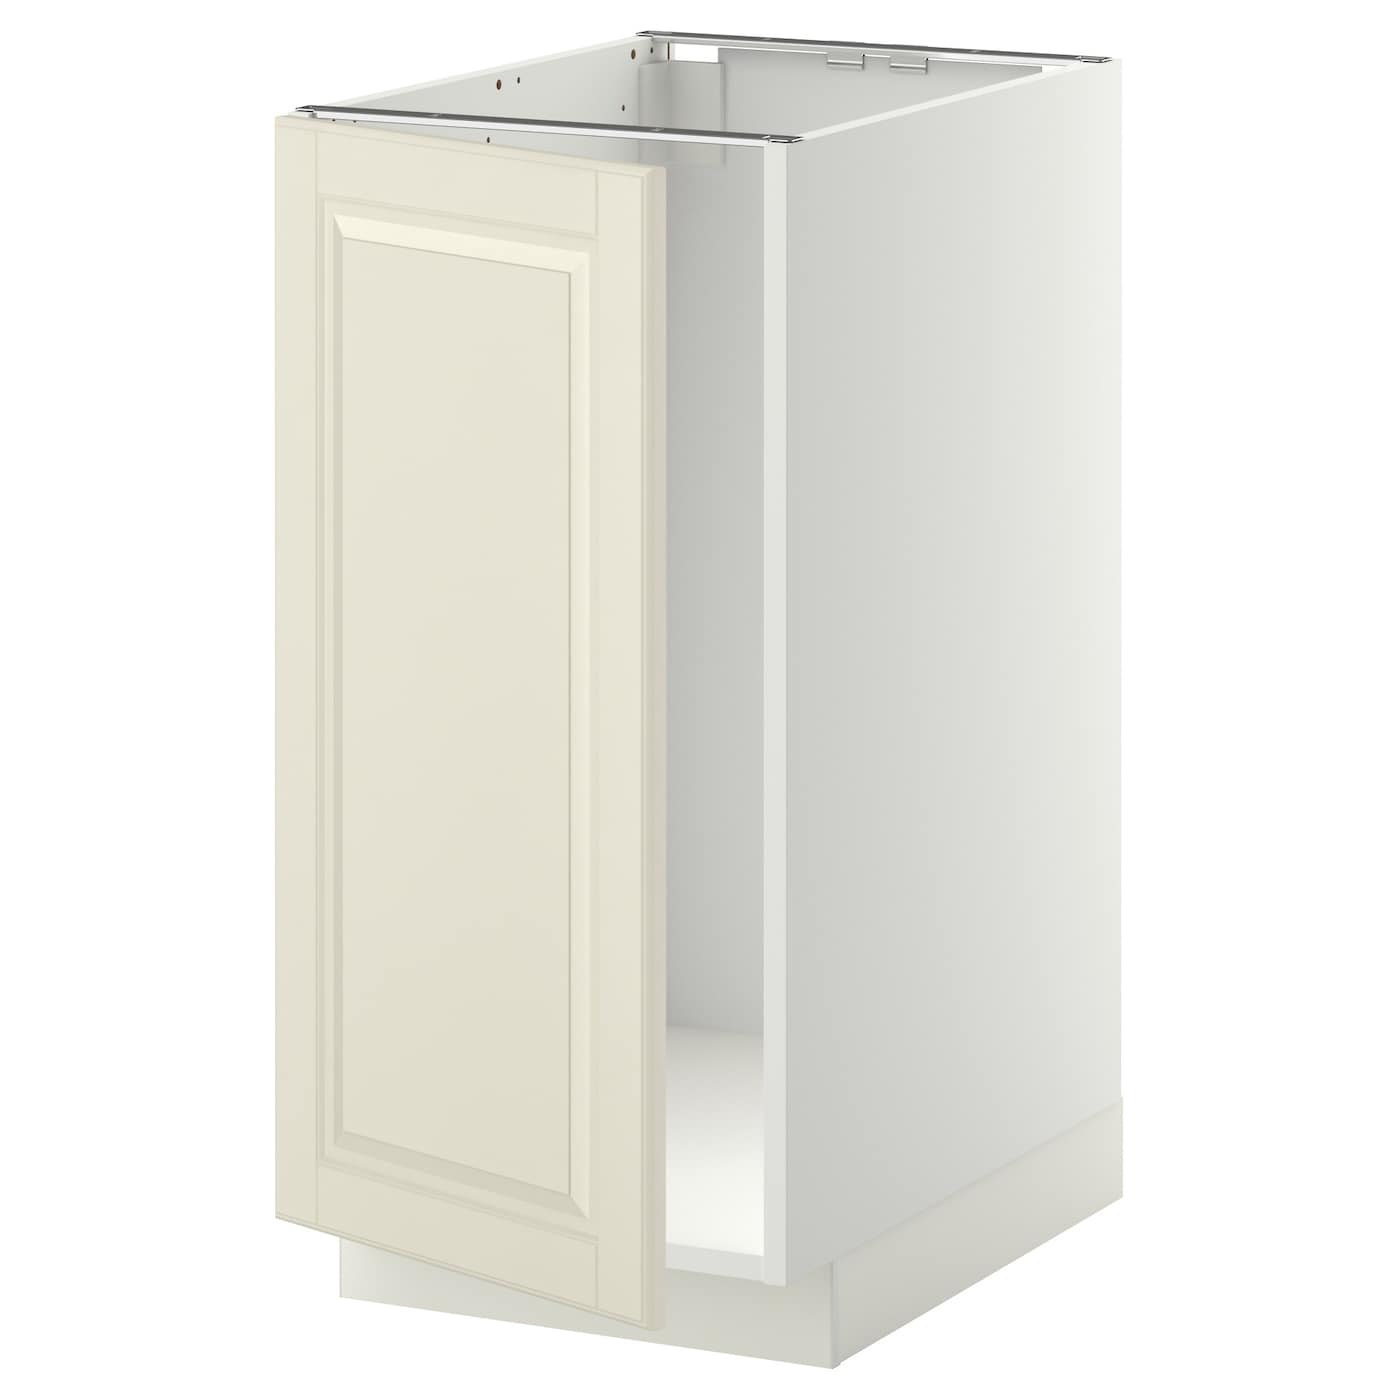 Напольный кухонный шкаф  - IKEA METOD MAXIMERA, 88x62x40см, белый/светло-бежевый, МЕТОД МАКСИМЕРА ИКЕА